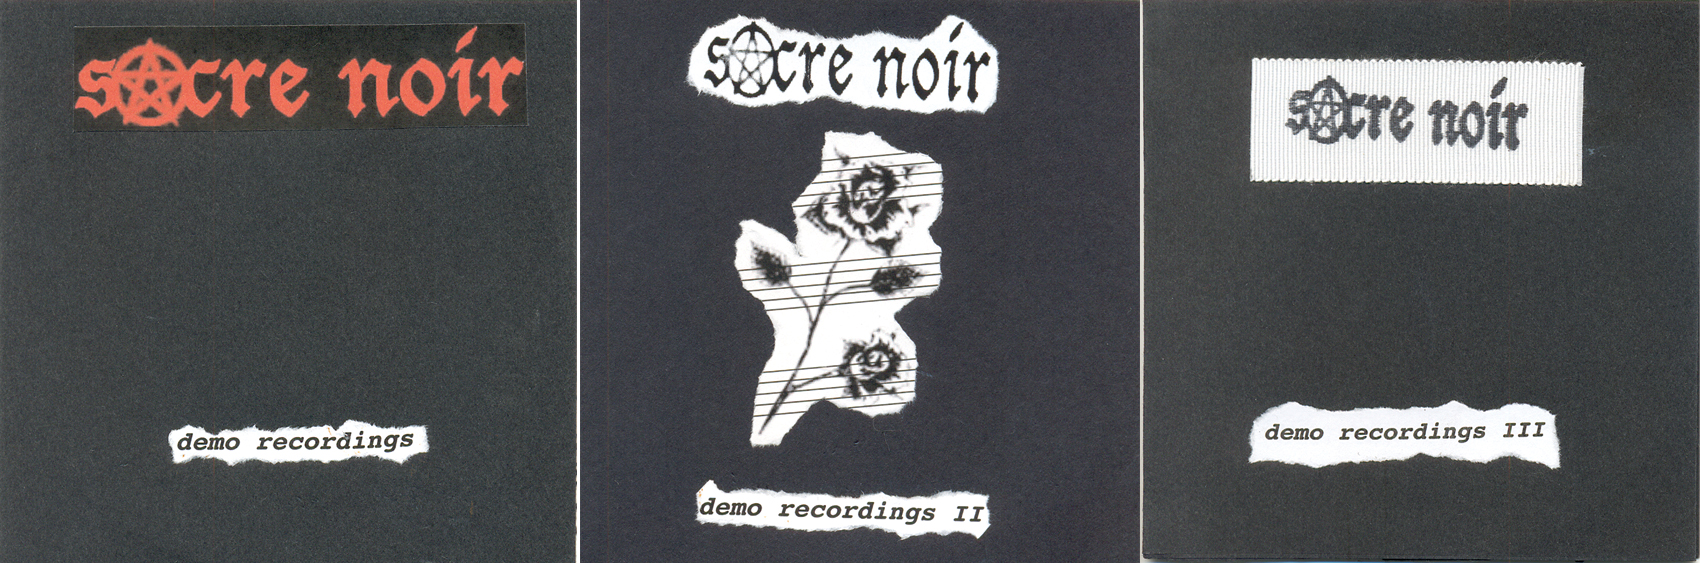 Sacre Noir EP covers triptych